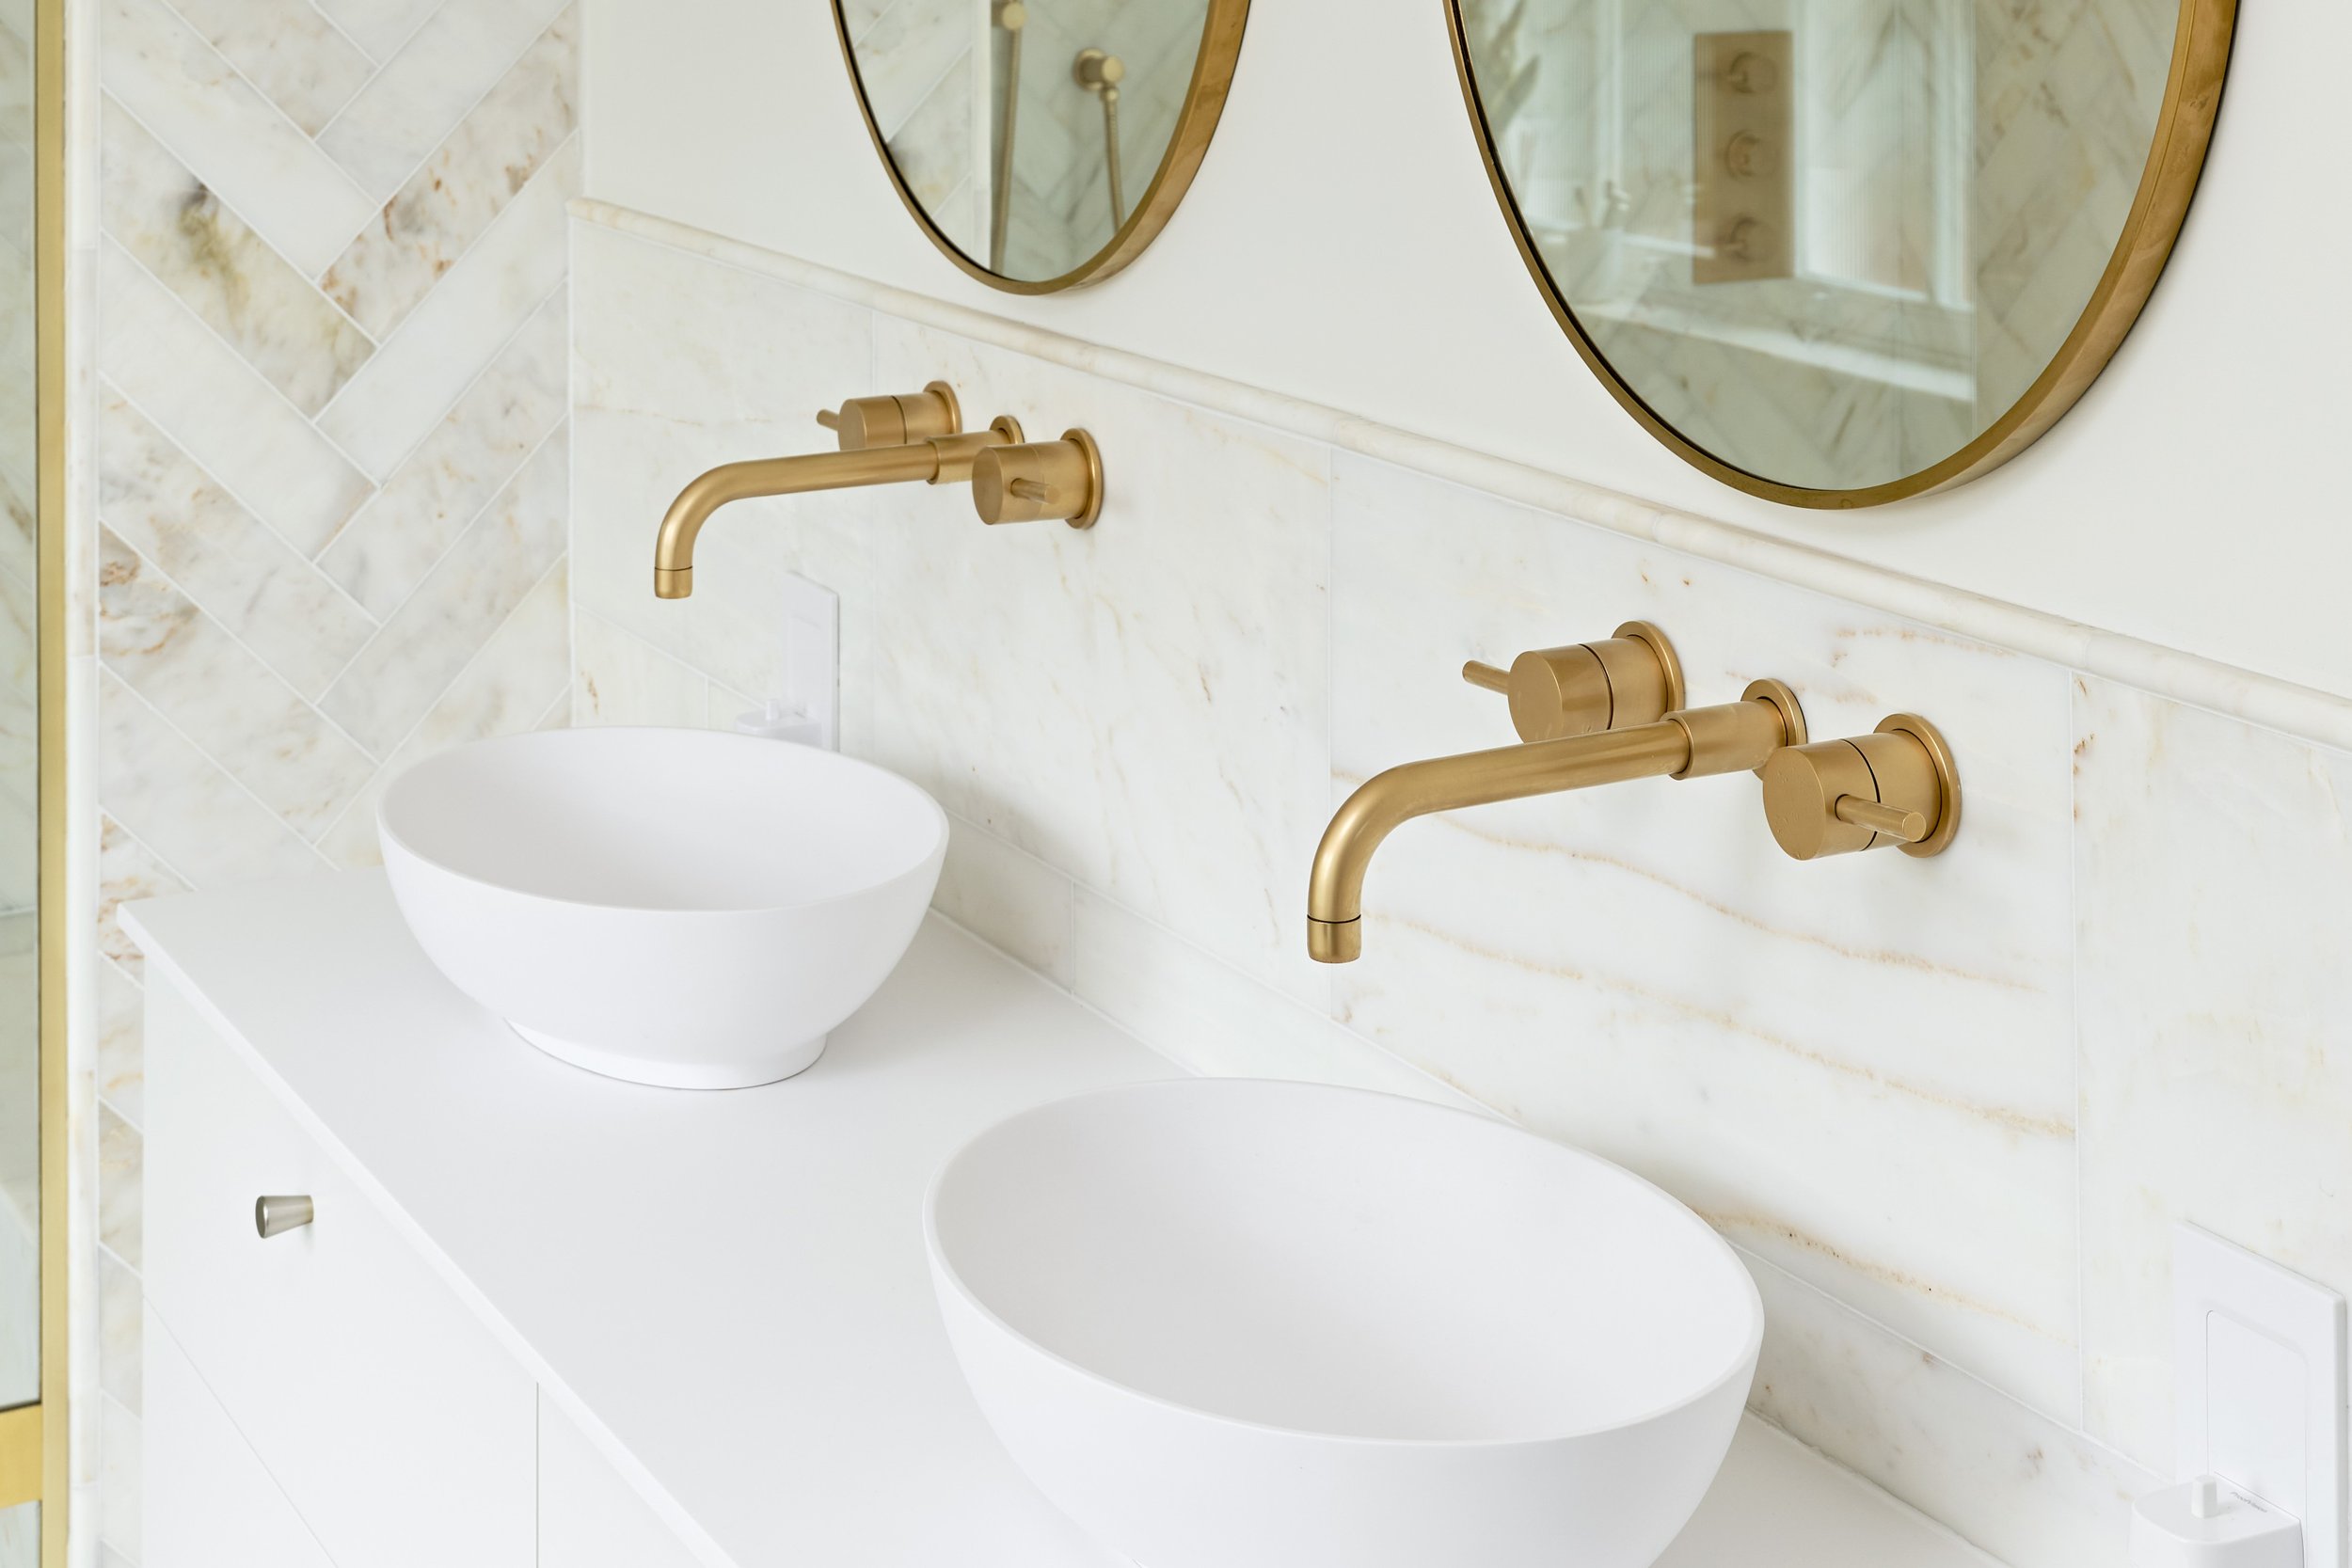 basins-in-neutral-bathroom-with-satin-gold-brassware.jpg